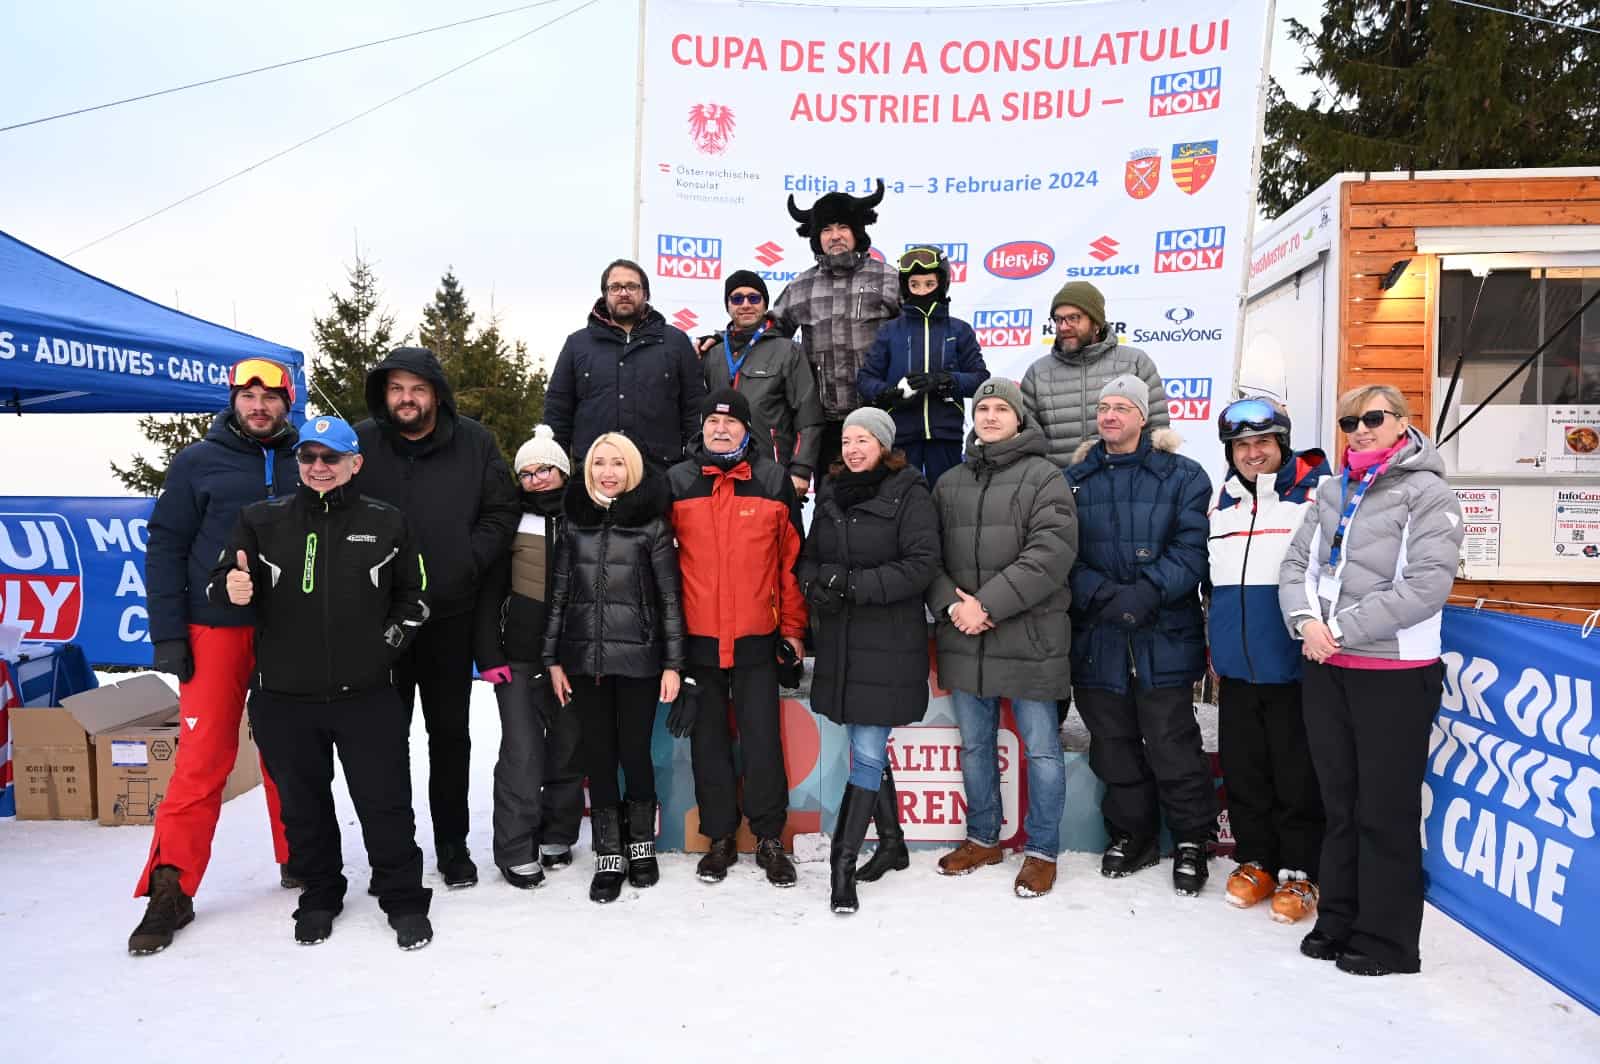 cupa de ski a consulatului austriei la sibiu. peste 170 de concurenți, cel mai tânăr în vârstă de 3 ani (foto)